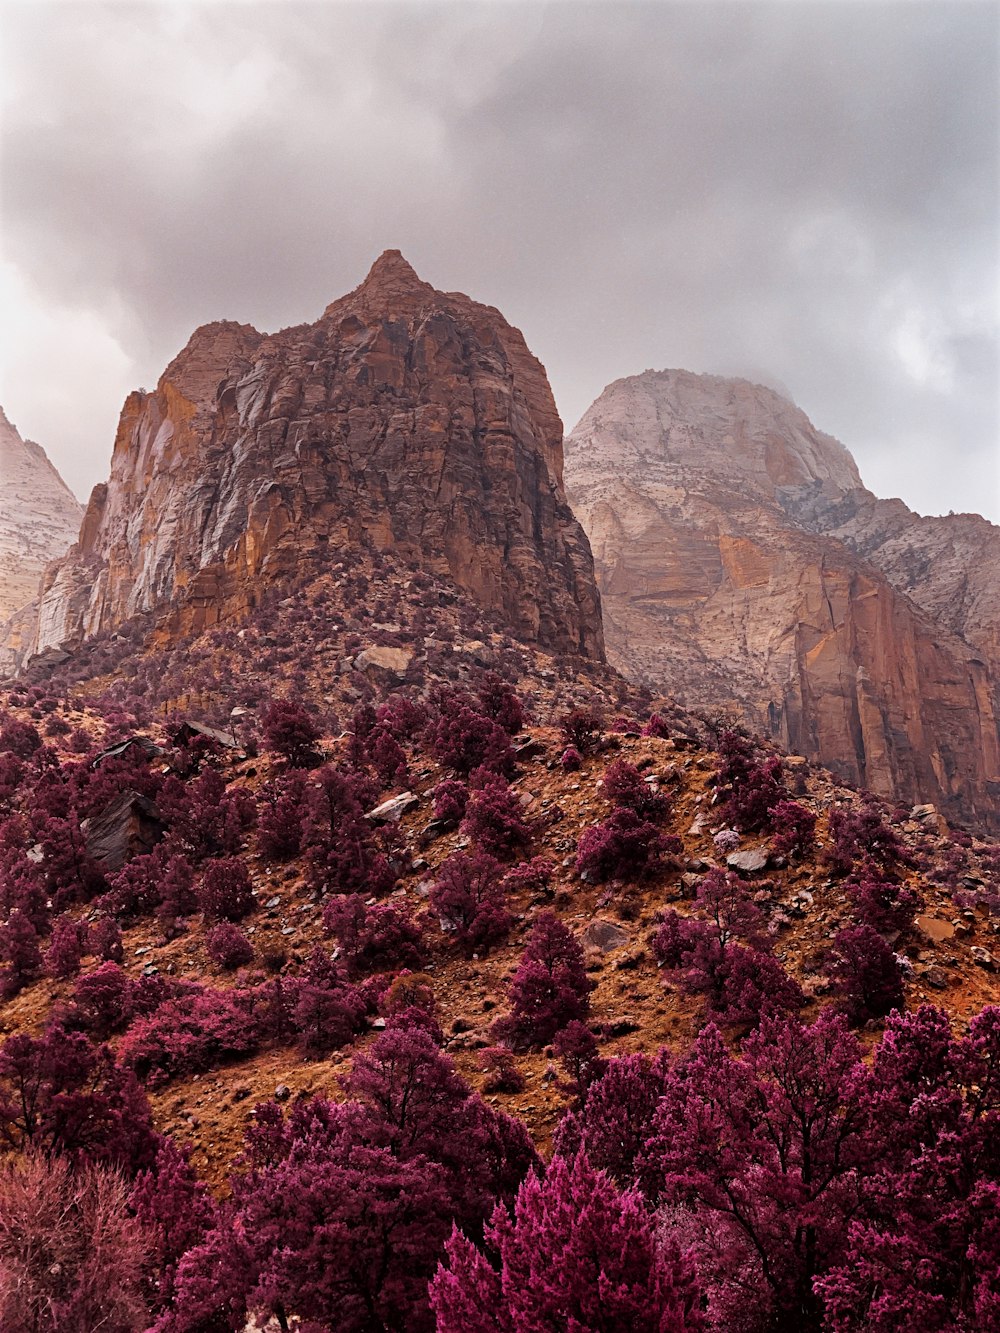 Campo di fiori viola e marroni vicino alla montagna rocciosa marrone sotto il cielo nuvoloso bianco durante il giorno